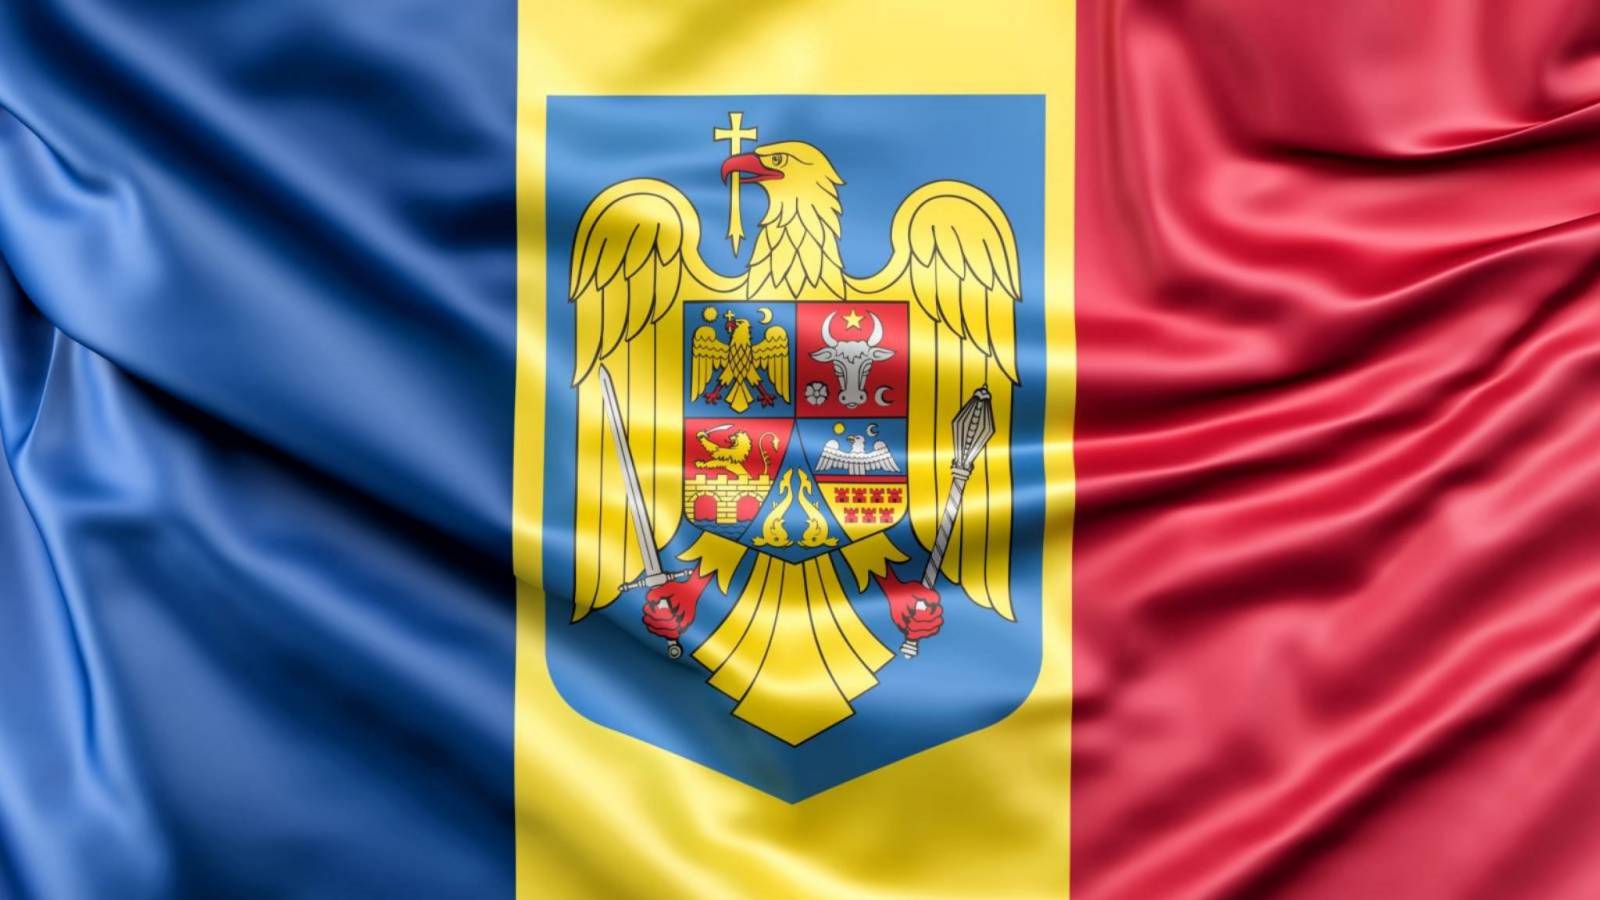 Le commissioni bancarie non aumenteranno in Romania dopo la limitazione dei pagamenti in contanti